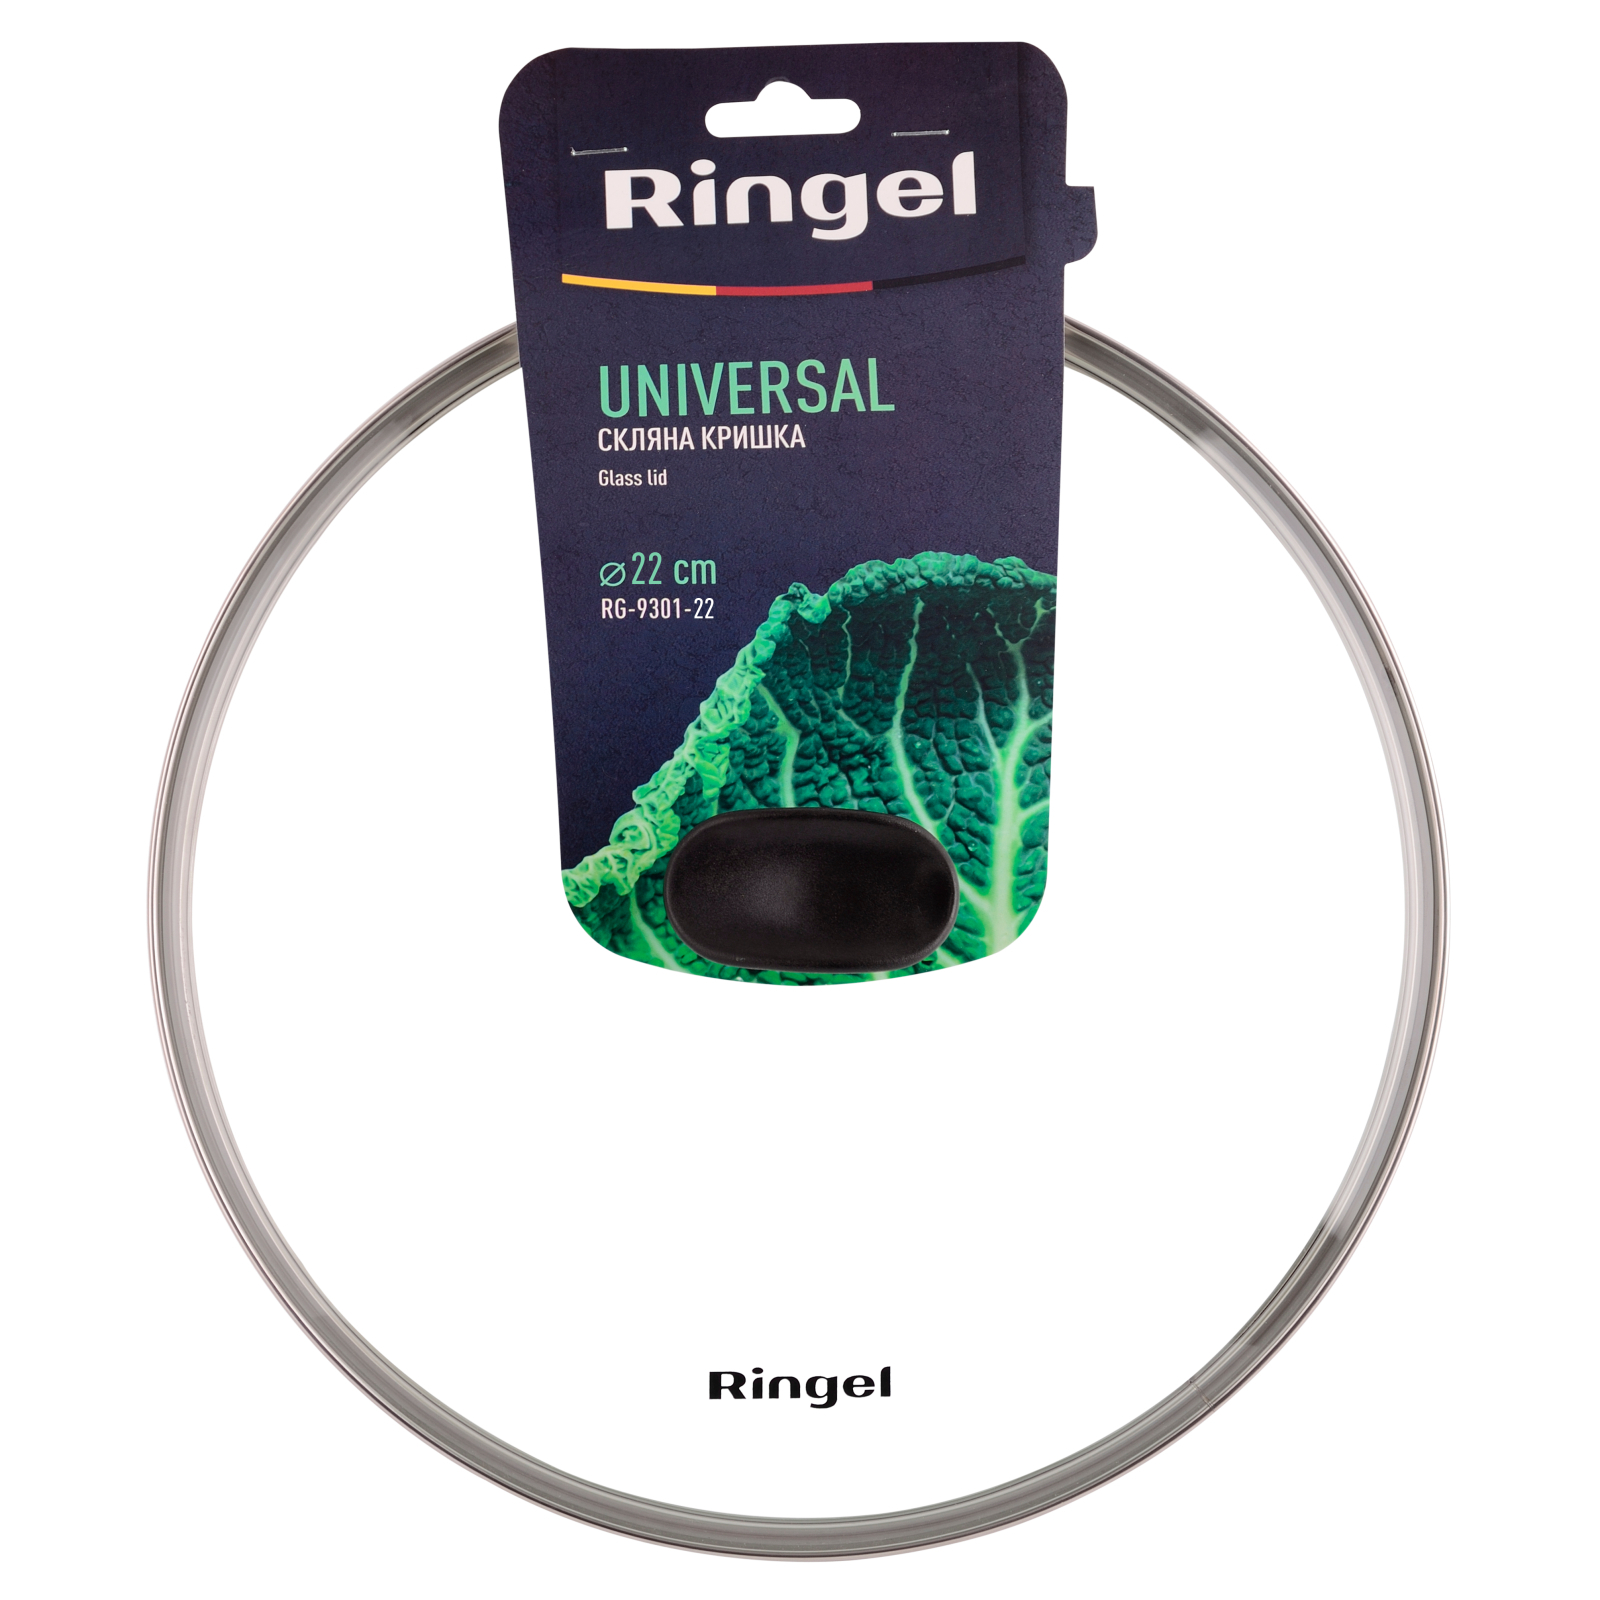 Крышка для посуды Ringel Universal 28 см (RG-9301-28) изображение 3